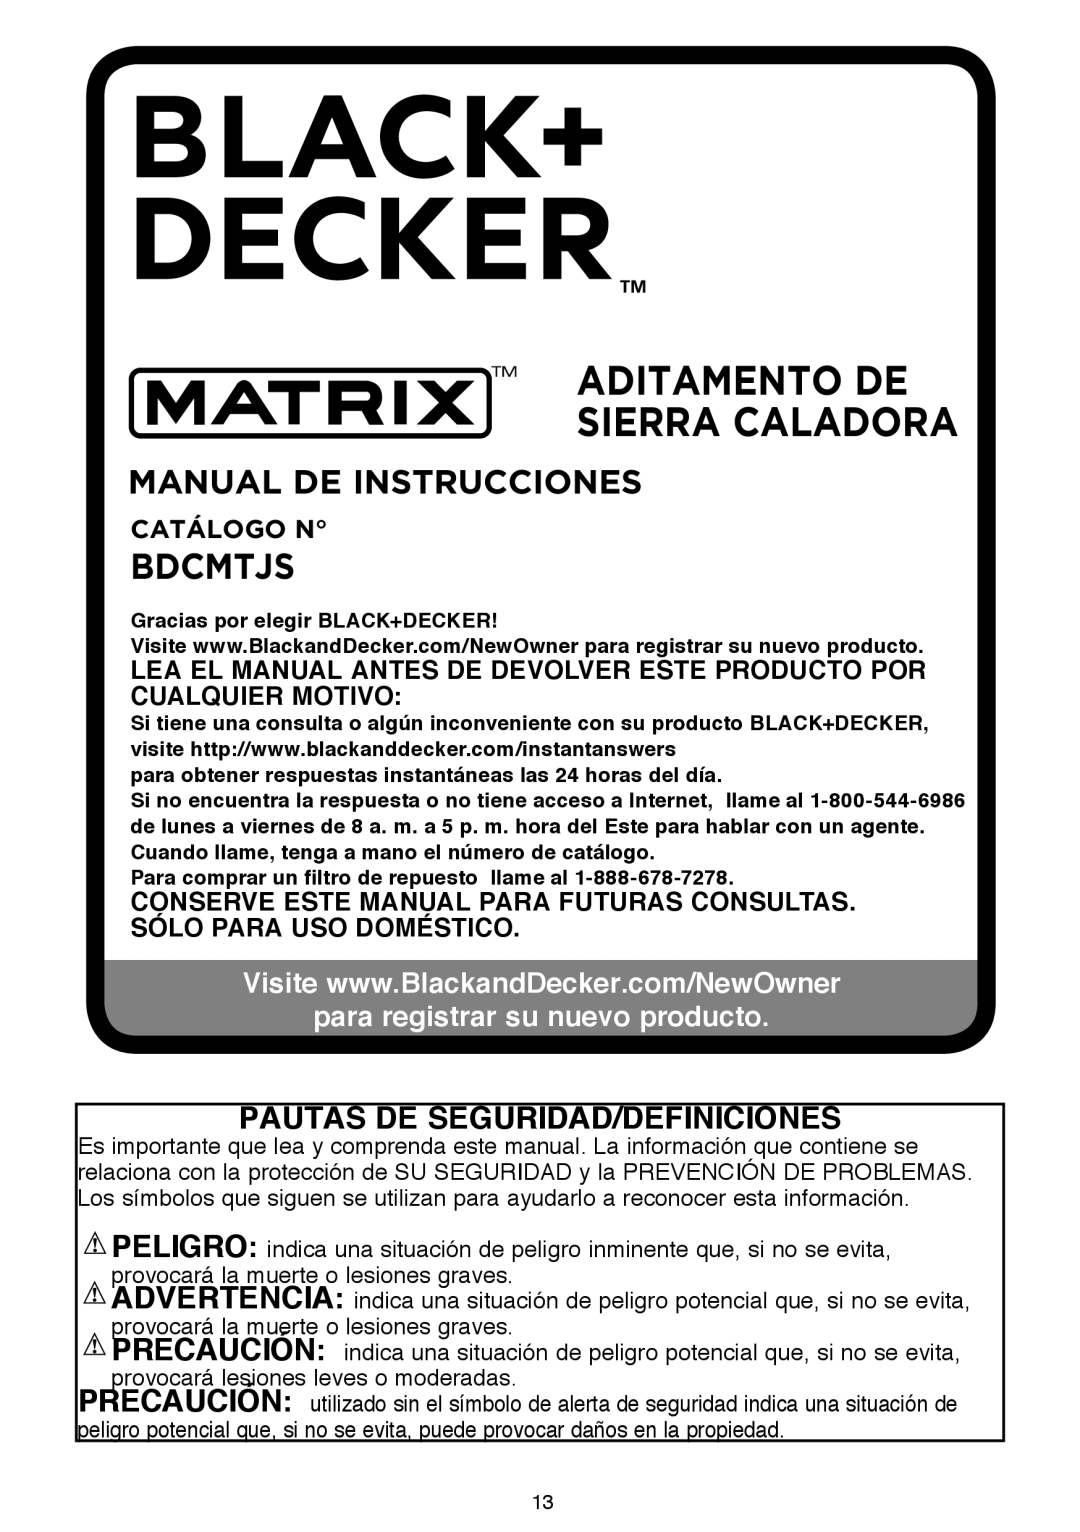 Black & Decker BDCMTJS aditamento de sierra caladora, Manual De Instrucciones, Bdcmtjs, Pautas De Seguridad/Definiciones 